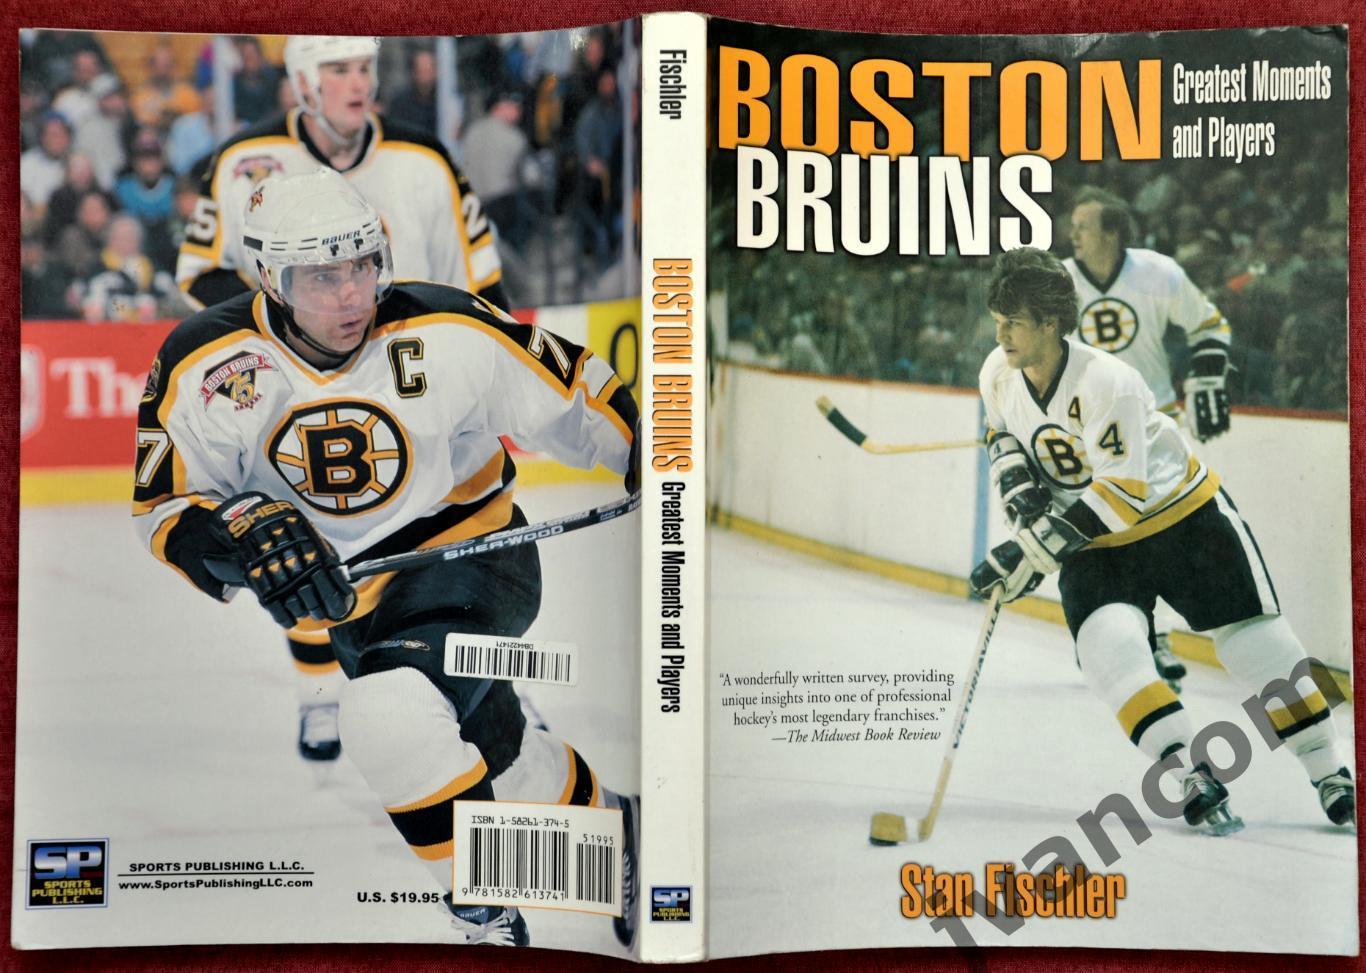 Хоккей. НХЛ - Бостон Брюинз - Величайшие моменты и игроки, 2001 год. 7